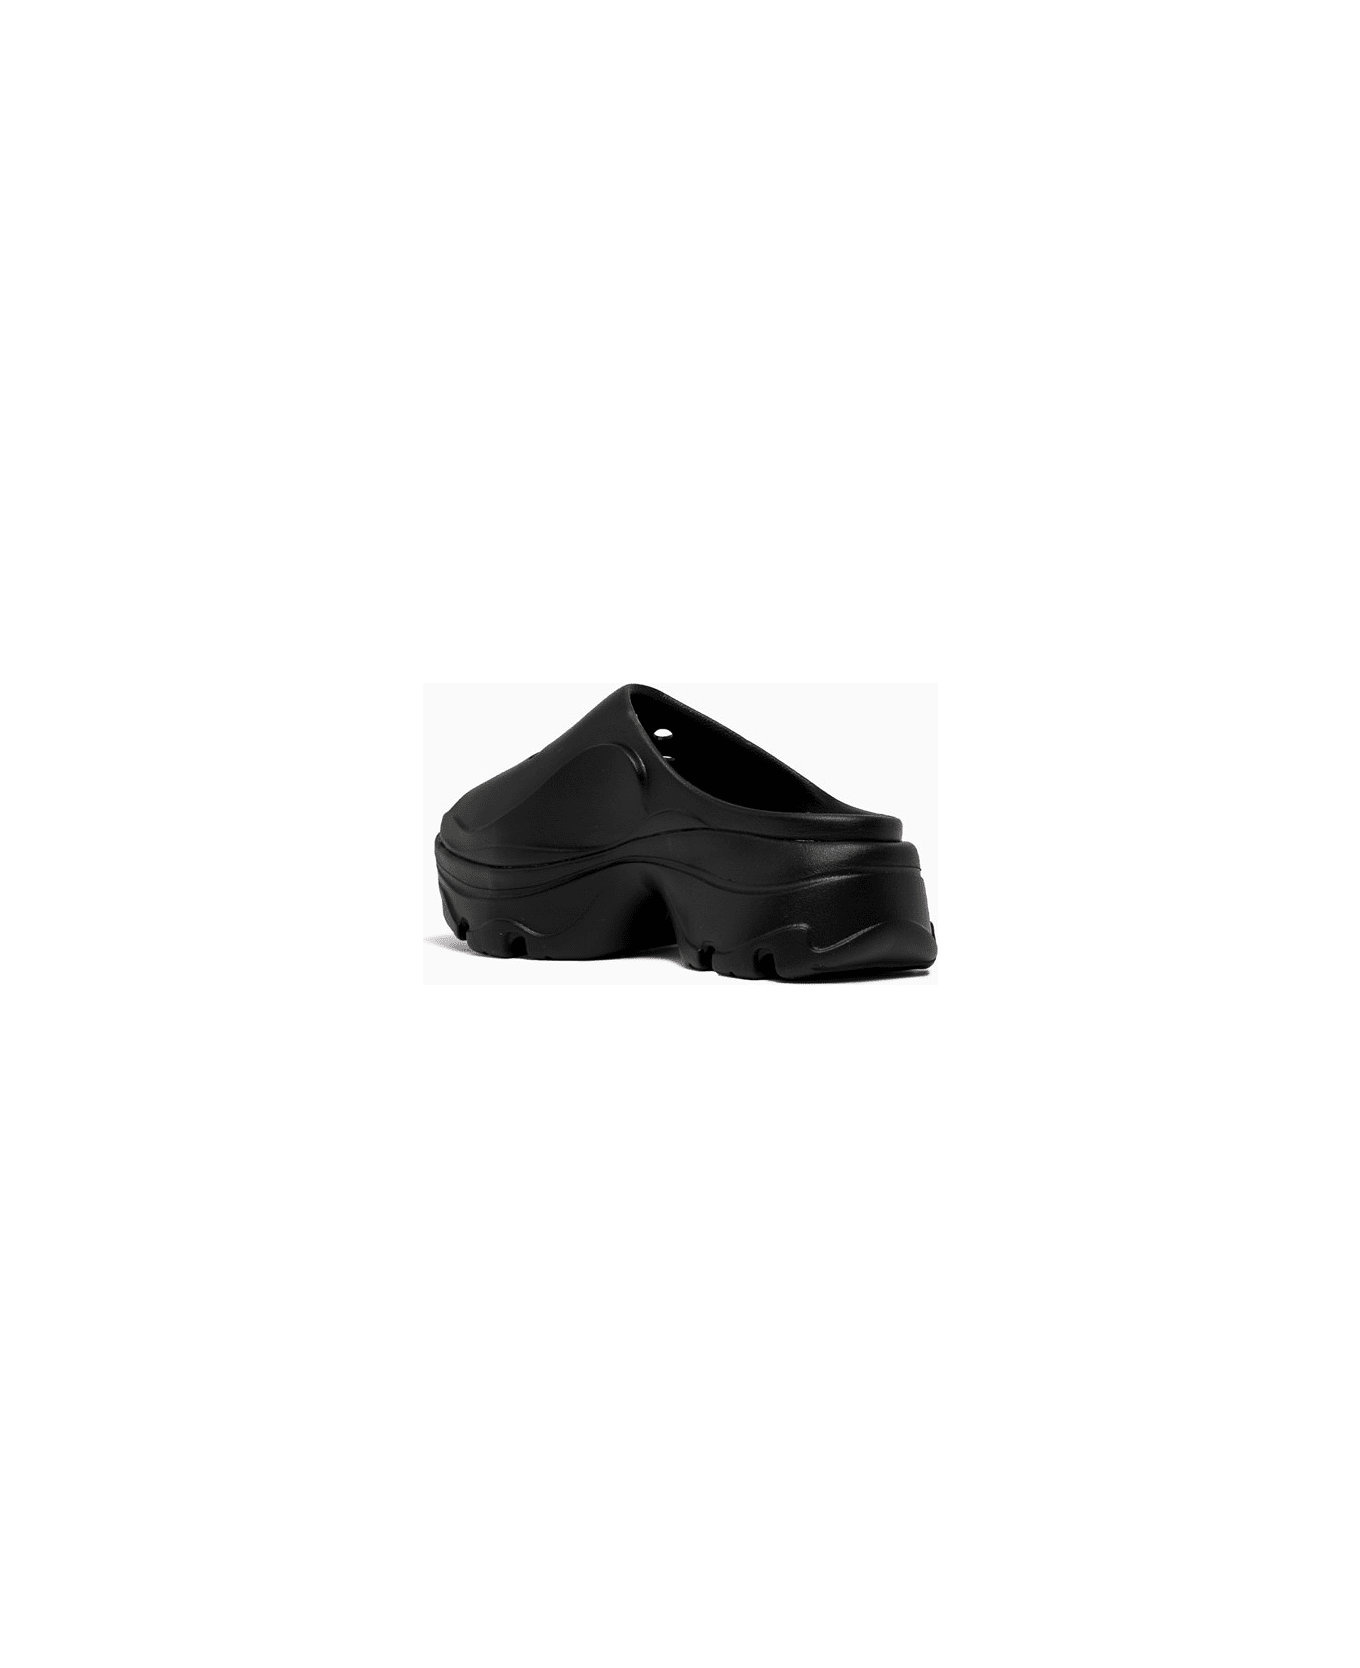 Adidas by Stella McCartney Clog Ciabatte Gw2050 - Black サンダル